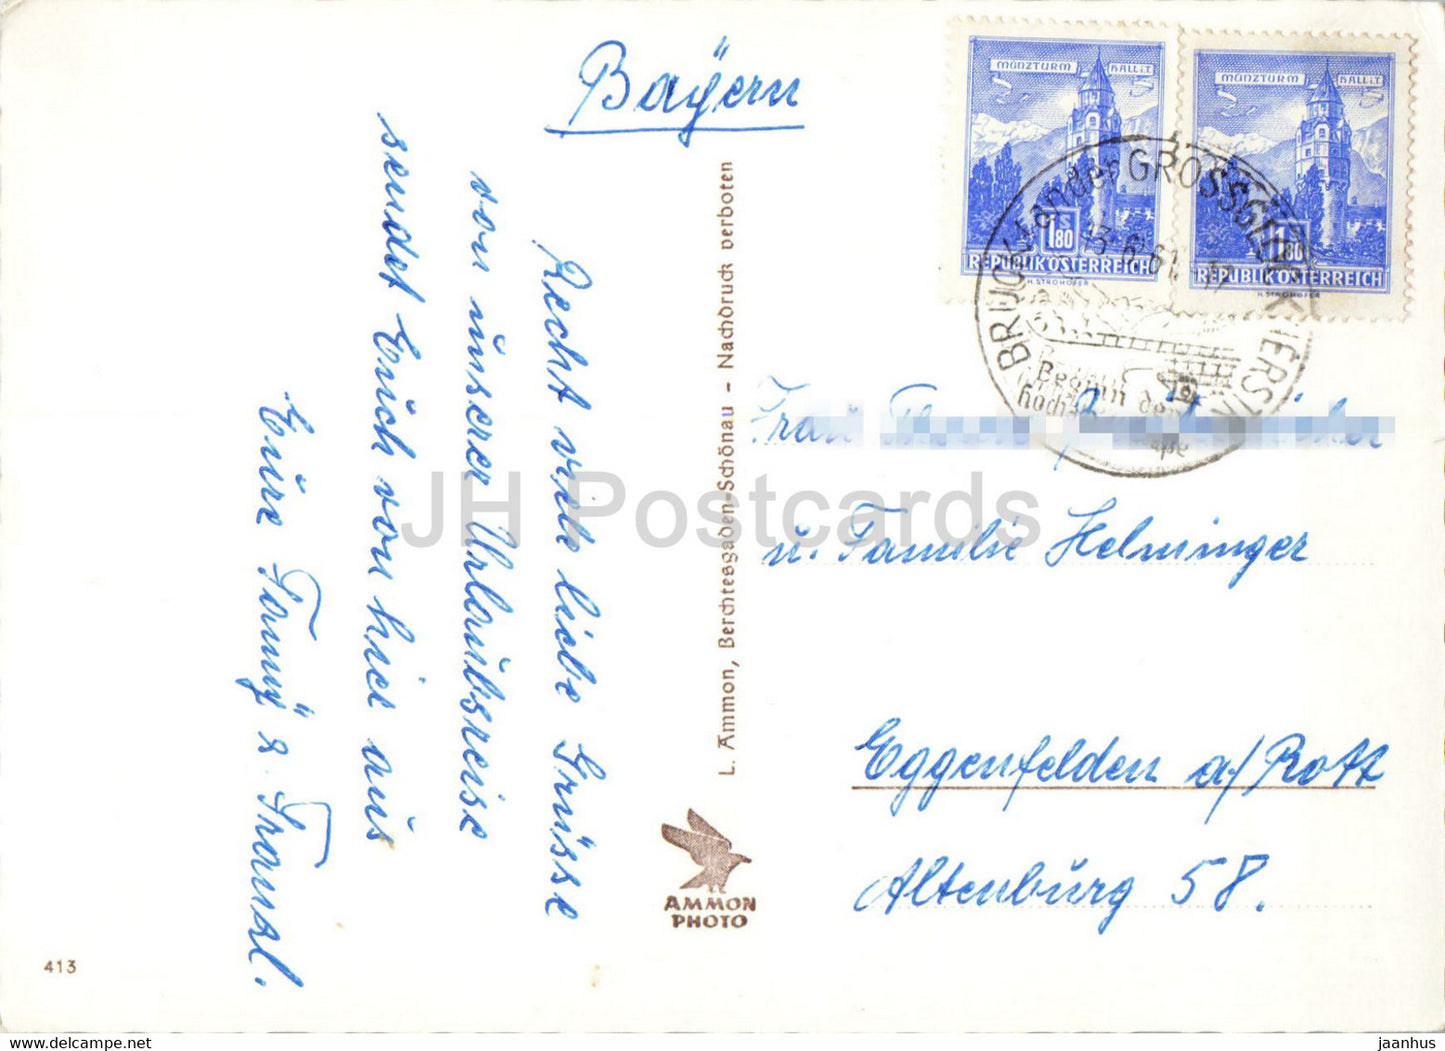 Heiligen Blut mit Großglockner - alte Postkarte - 1961 - Österreich - gebraucht